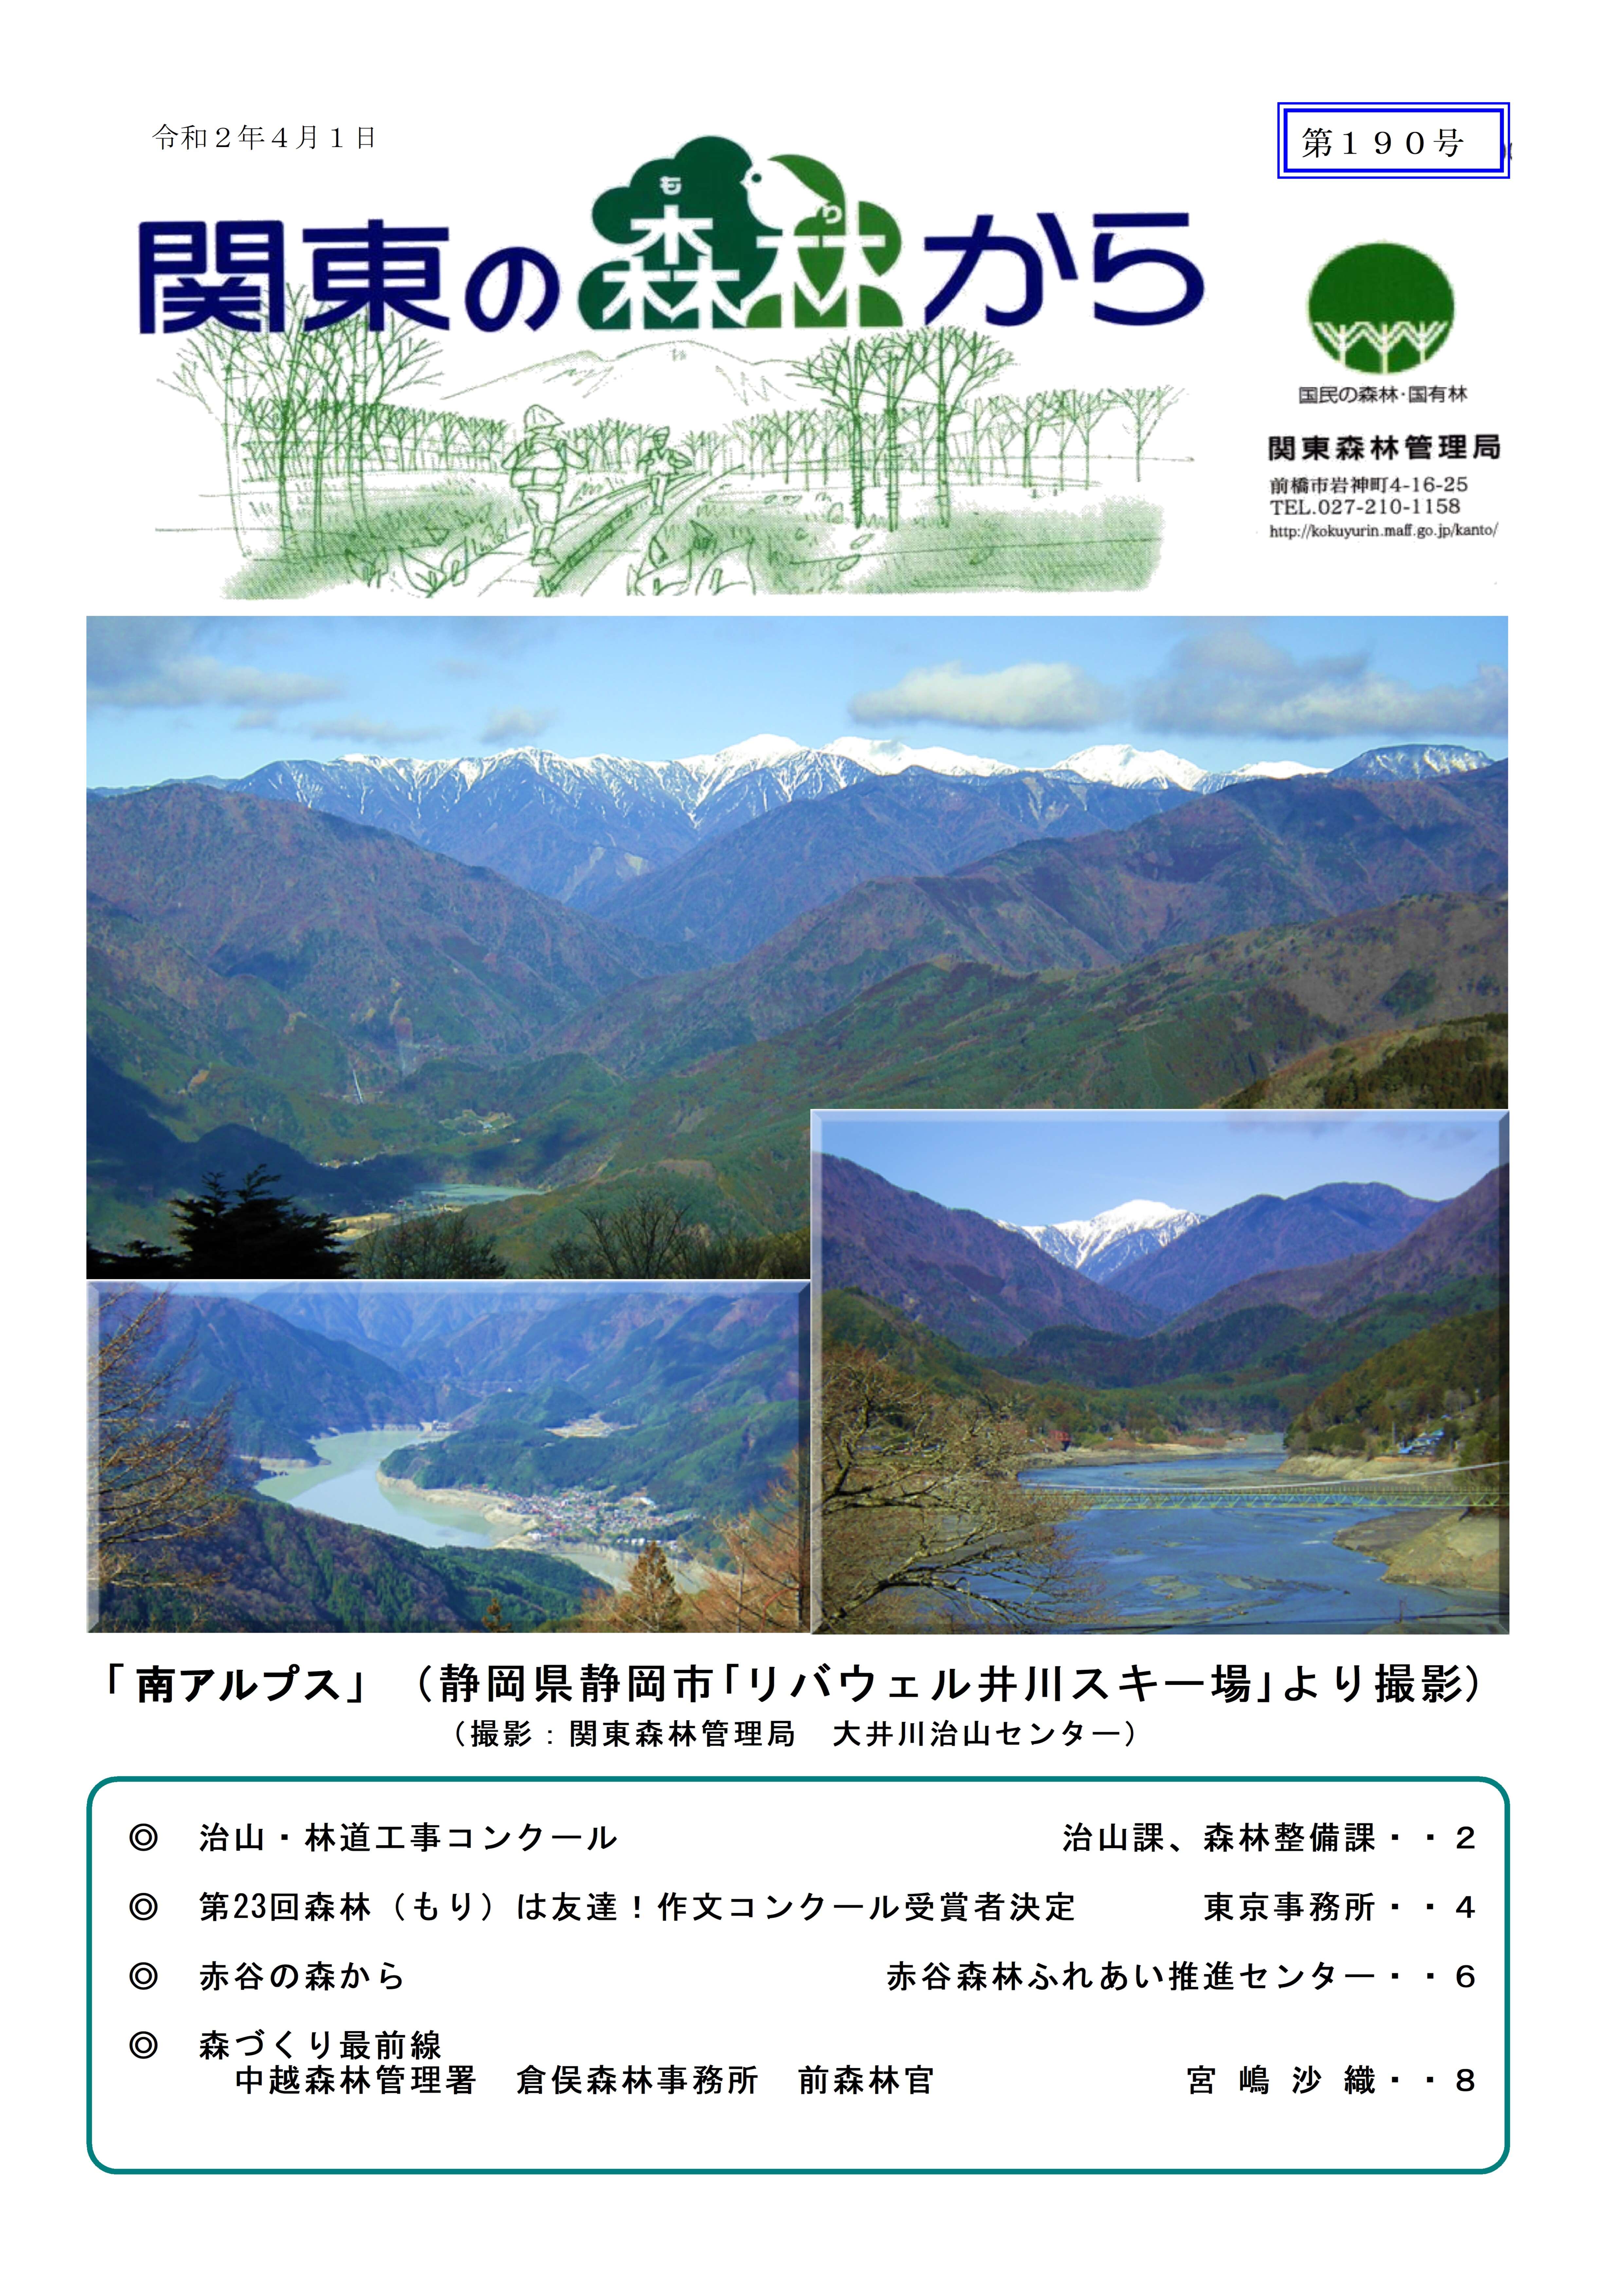 広報誌関東の森林から4月号表紙